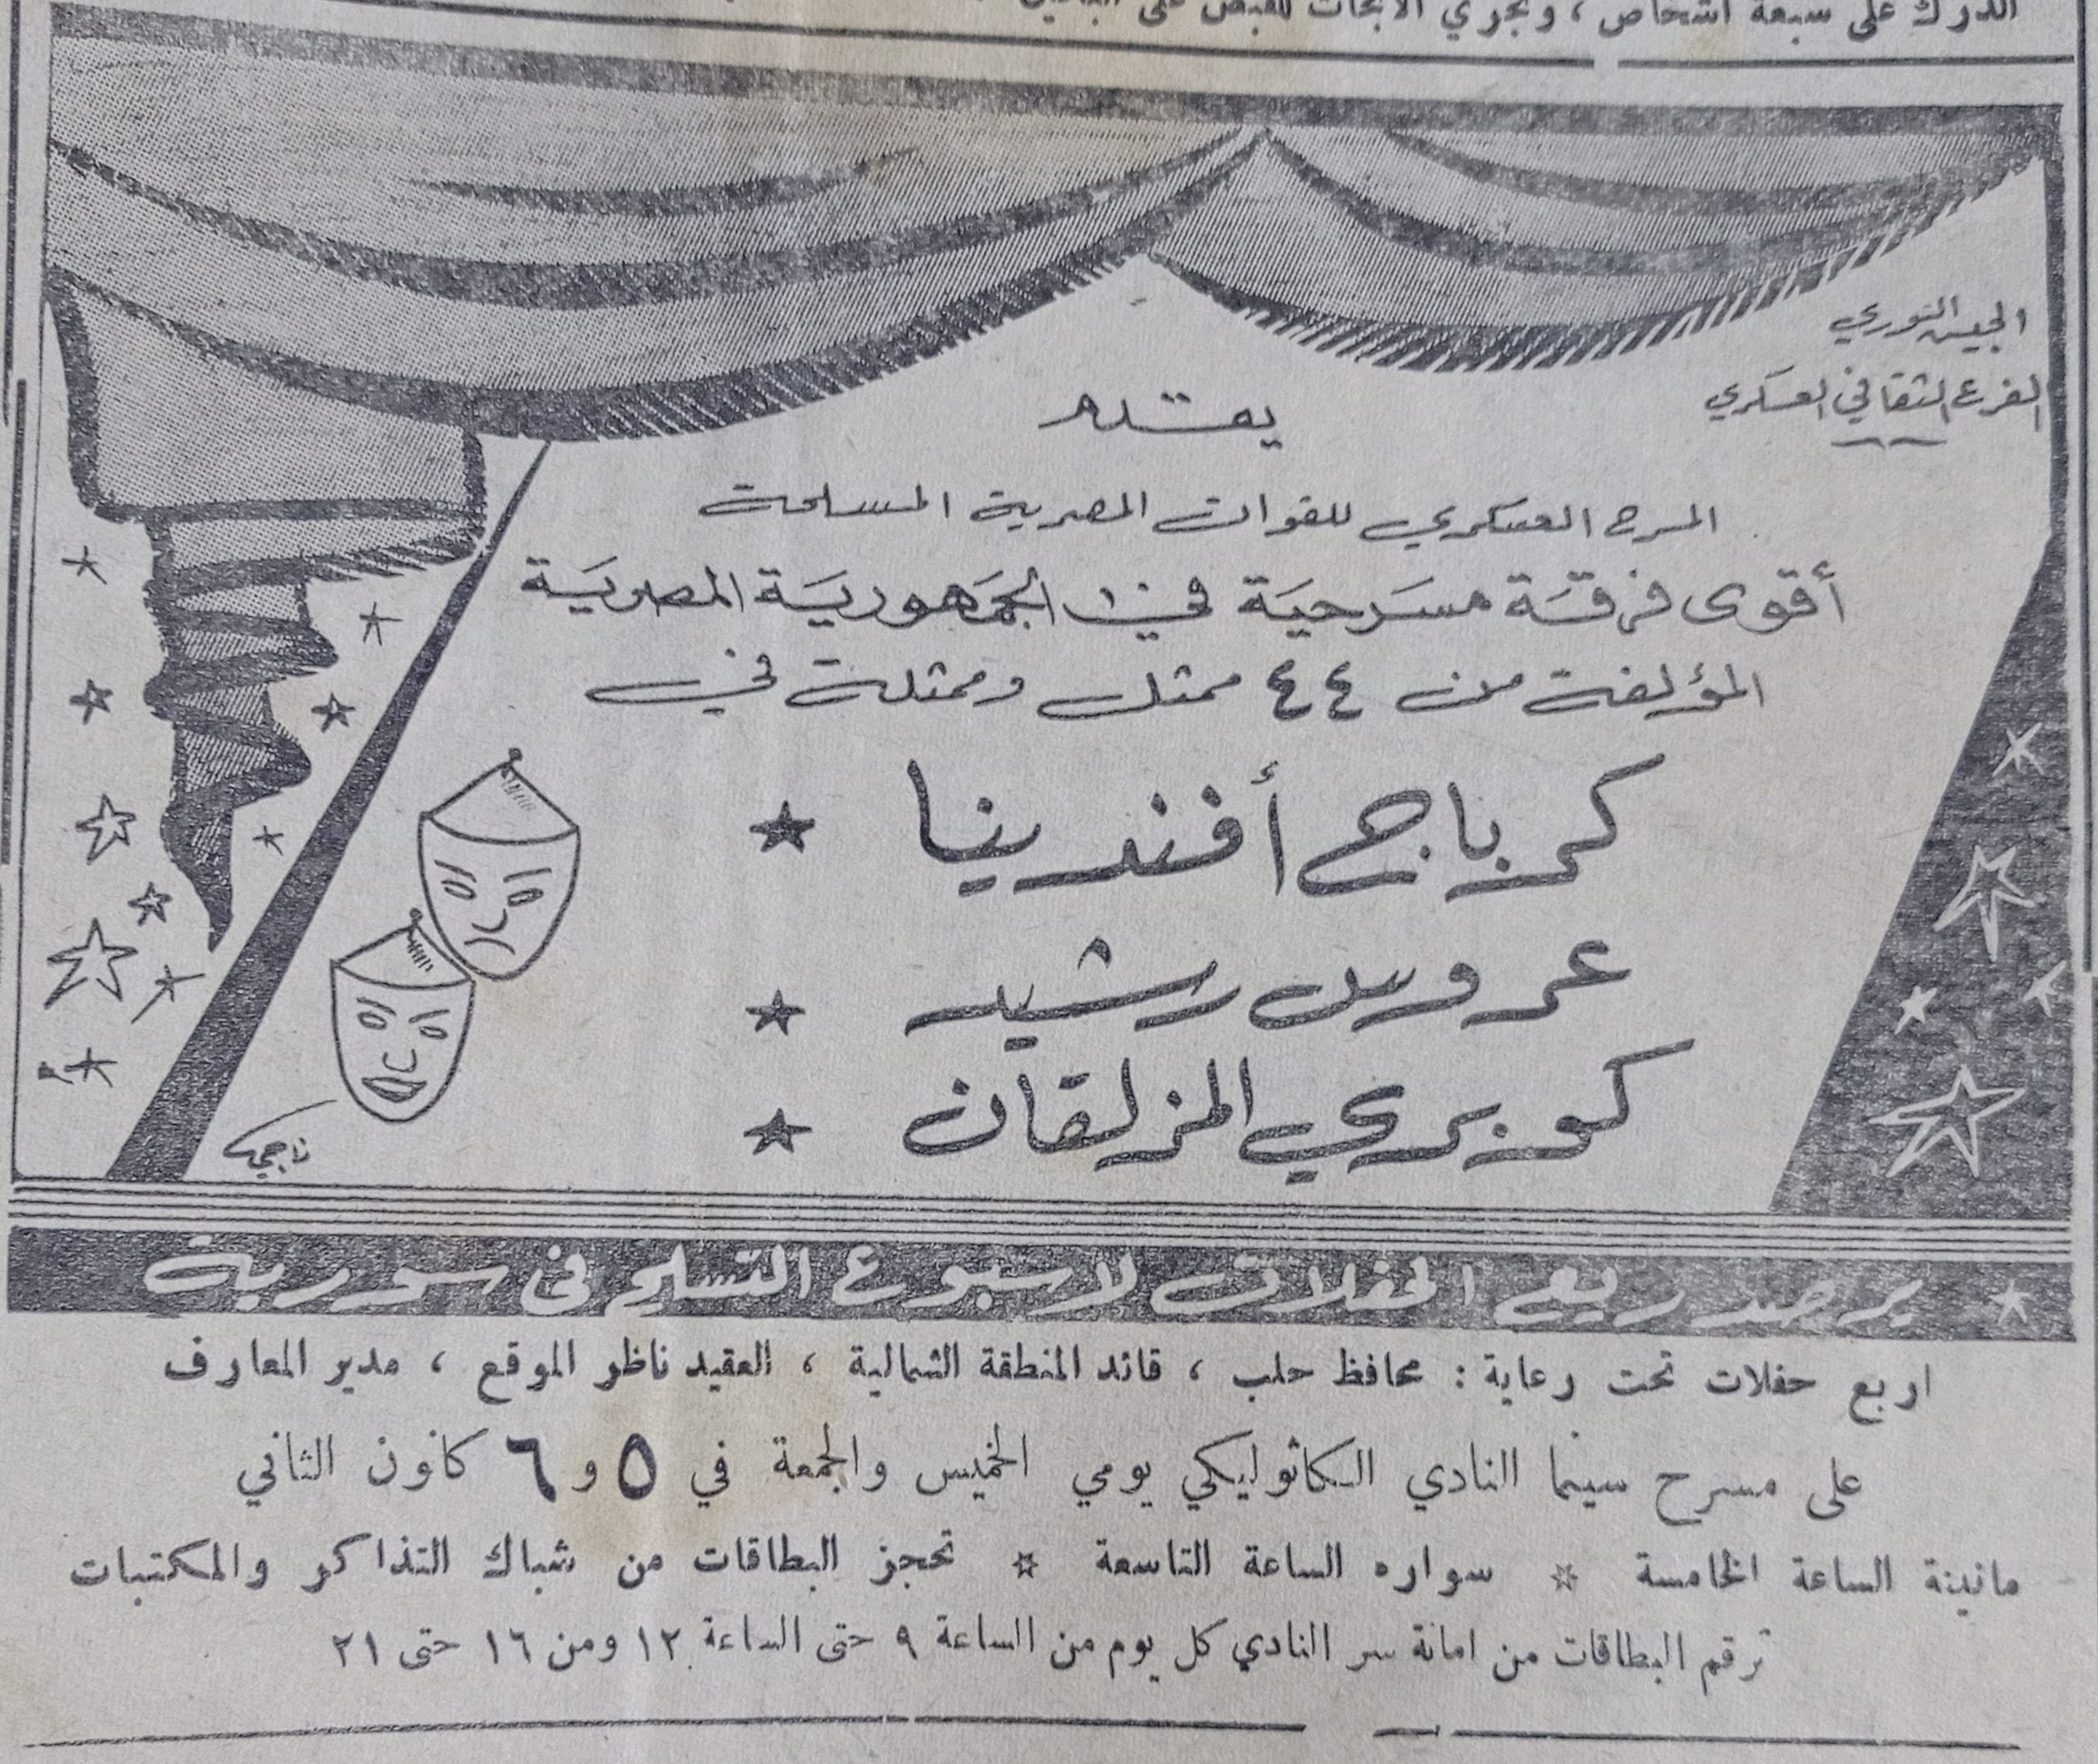 التاريخ السوري المعاصر - إعلان عن عروض المسرح العسكري على مسرح سينما النادي الكاثوليكي في حلب عام 1956